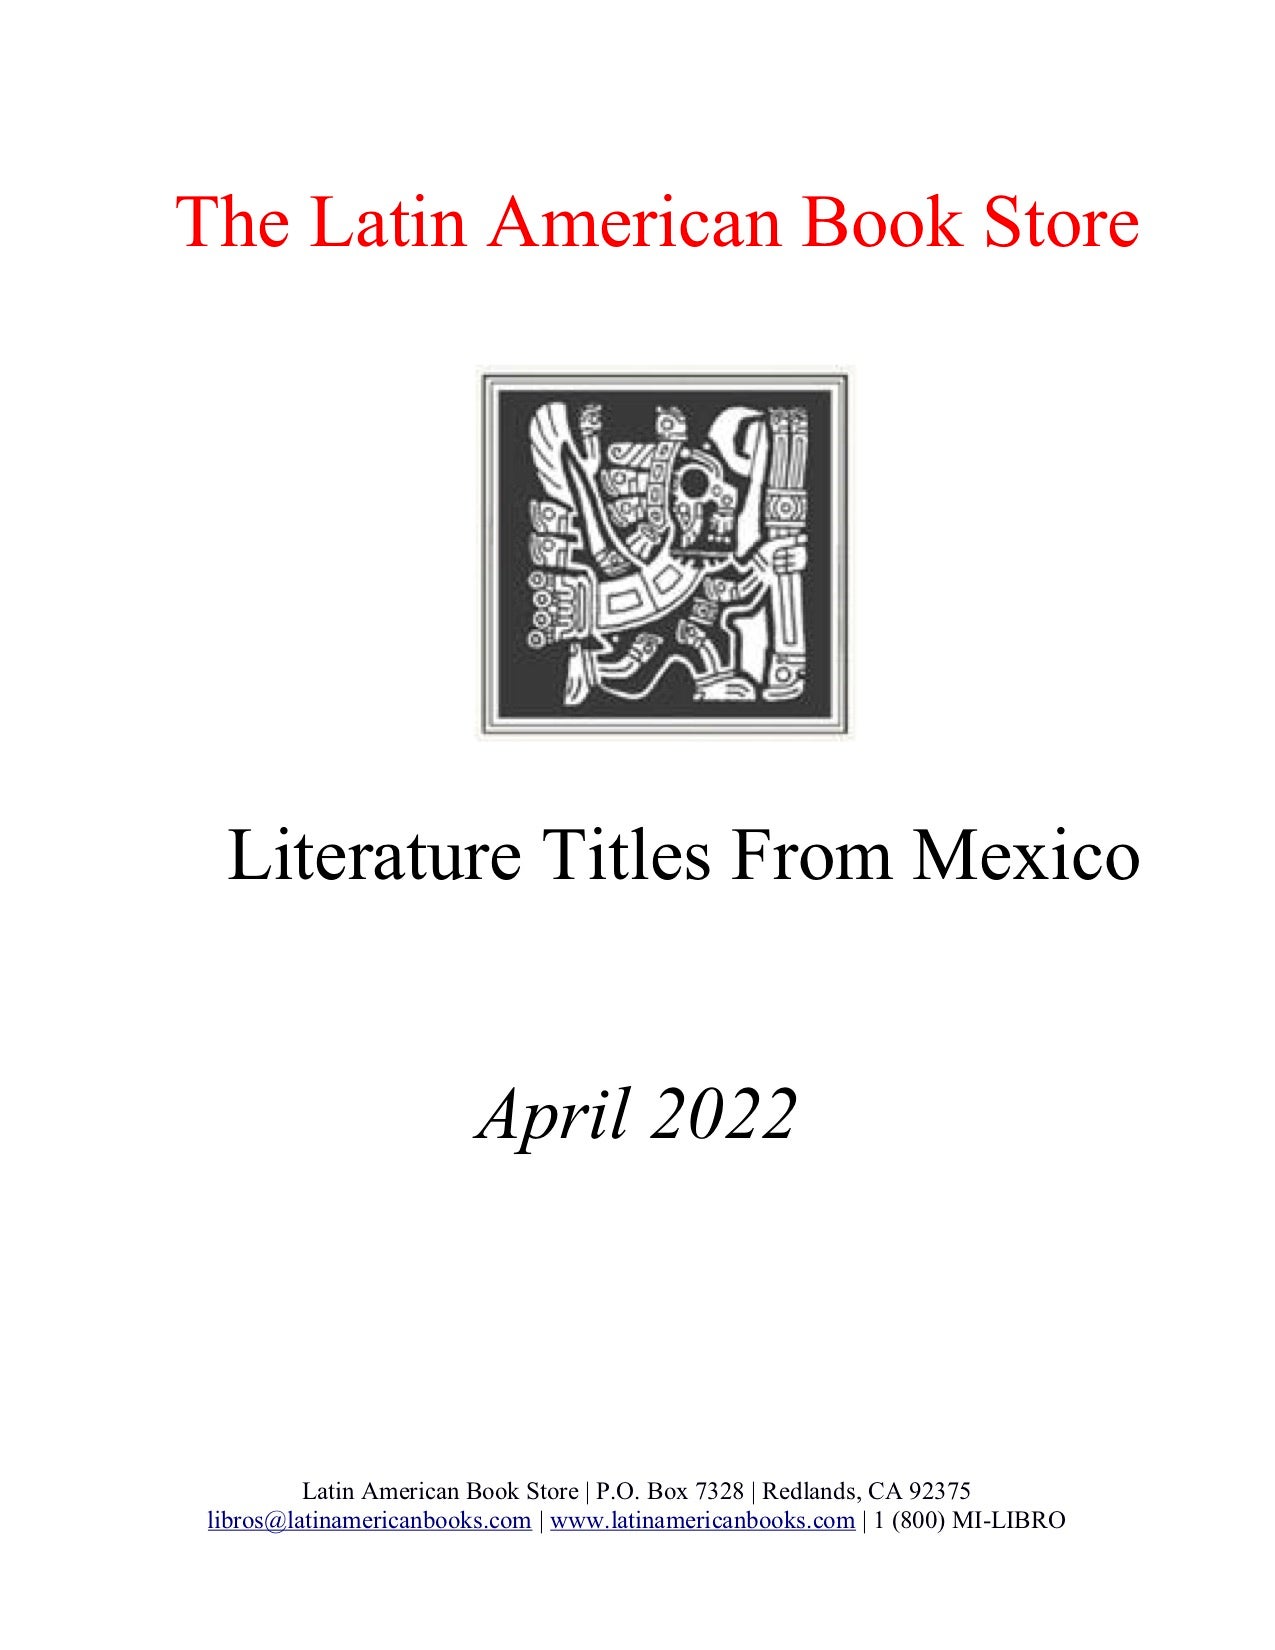 Mexican Literature Titles, April 2022